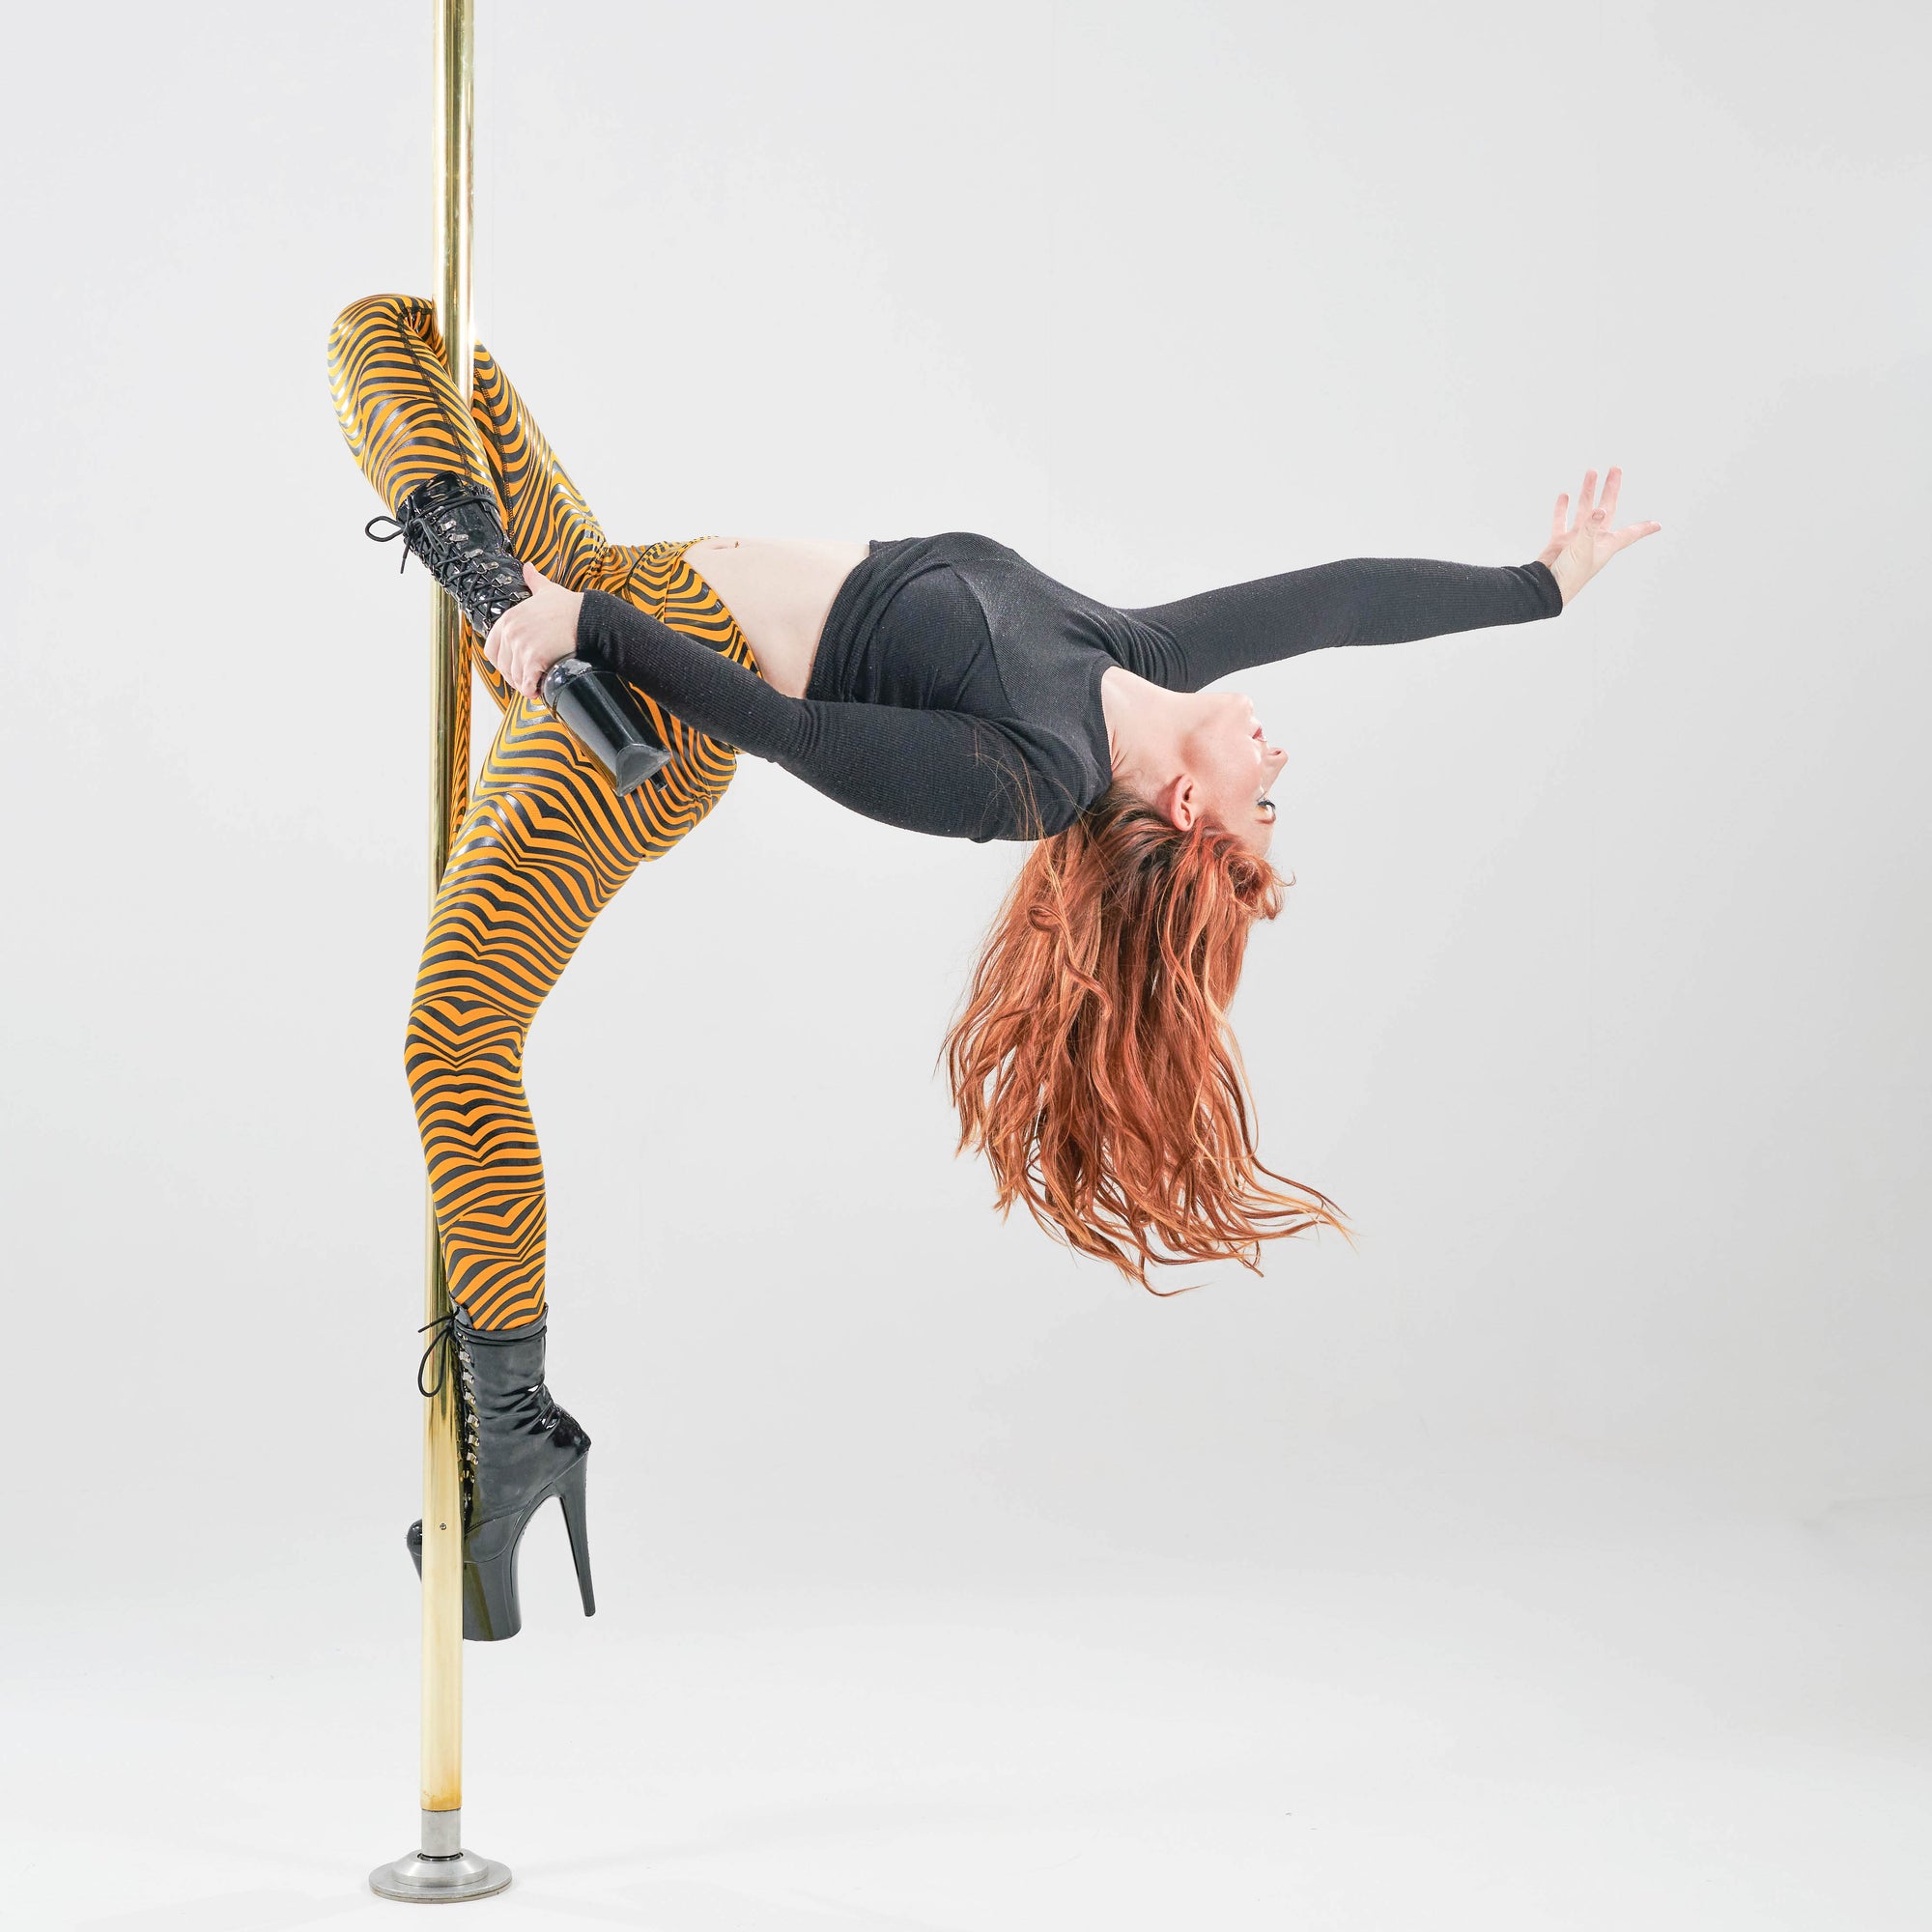 Valencia Sticky Grip Pole Dance Leggings – Wink Fitness wear